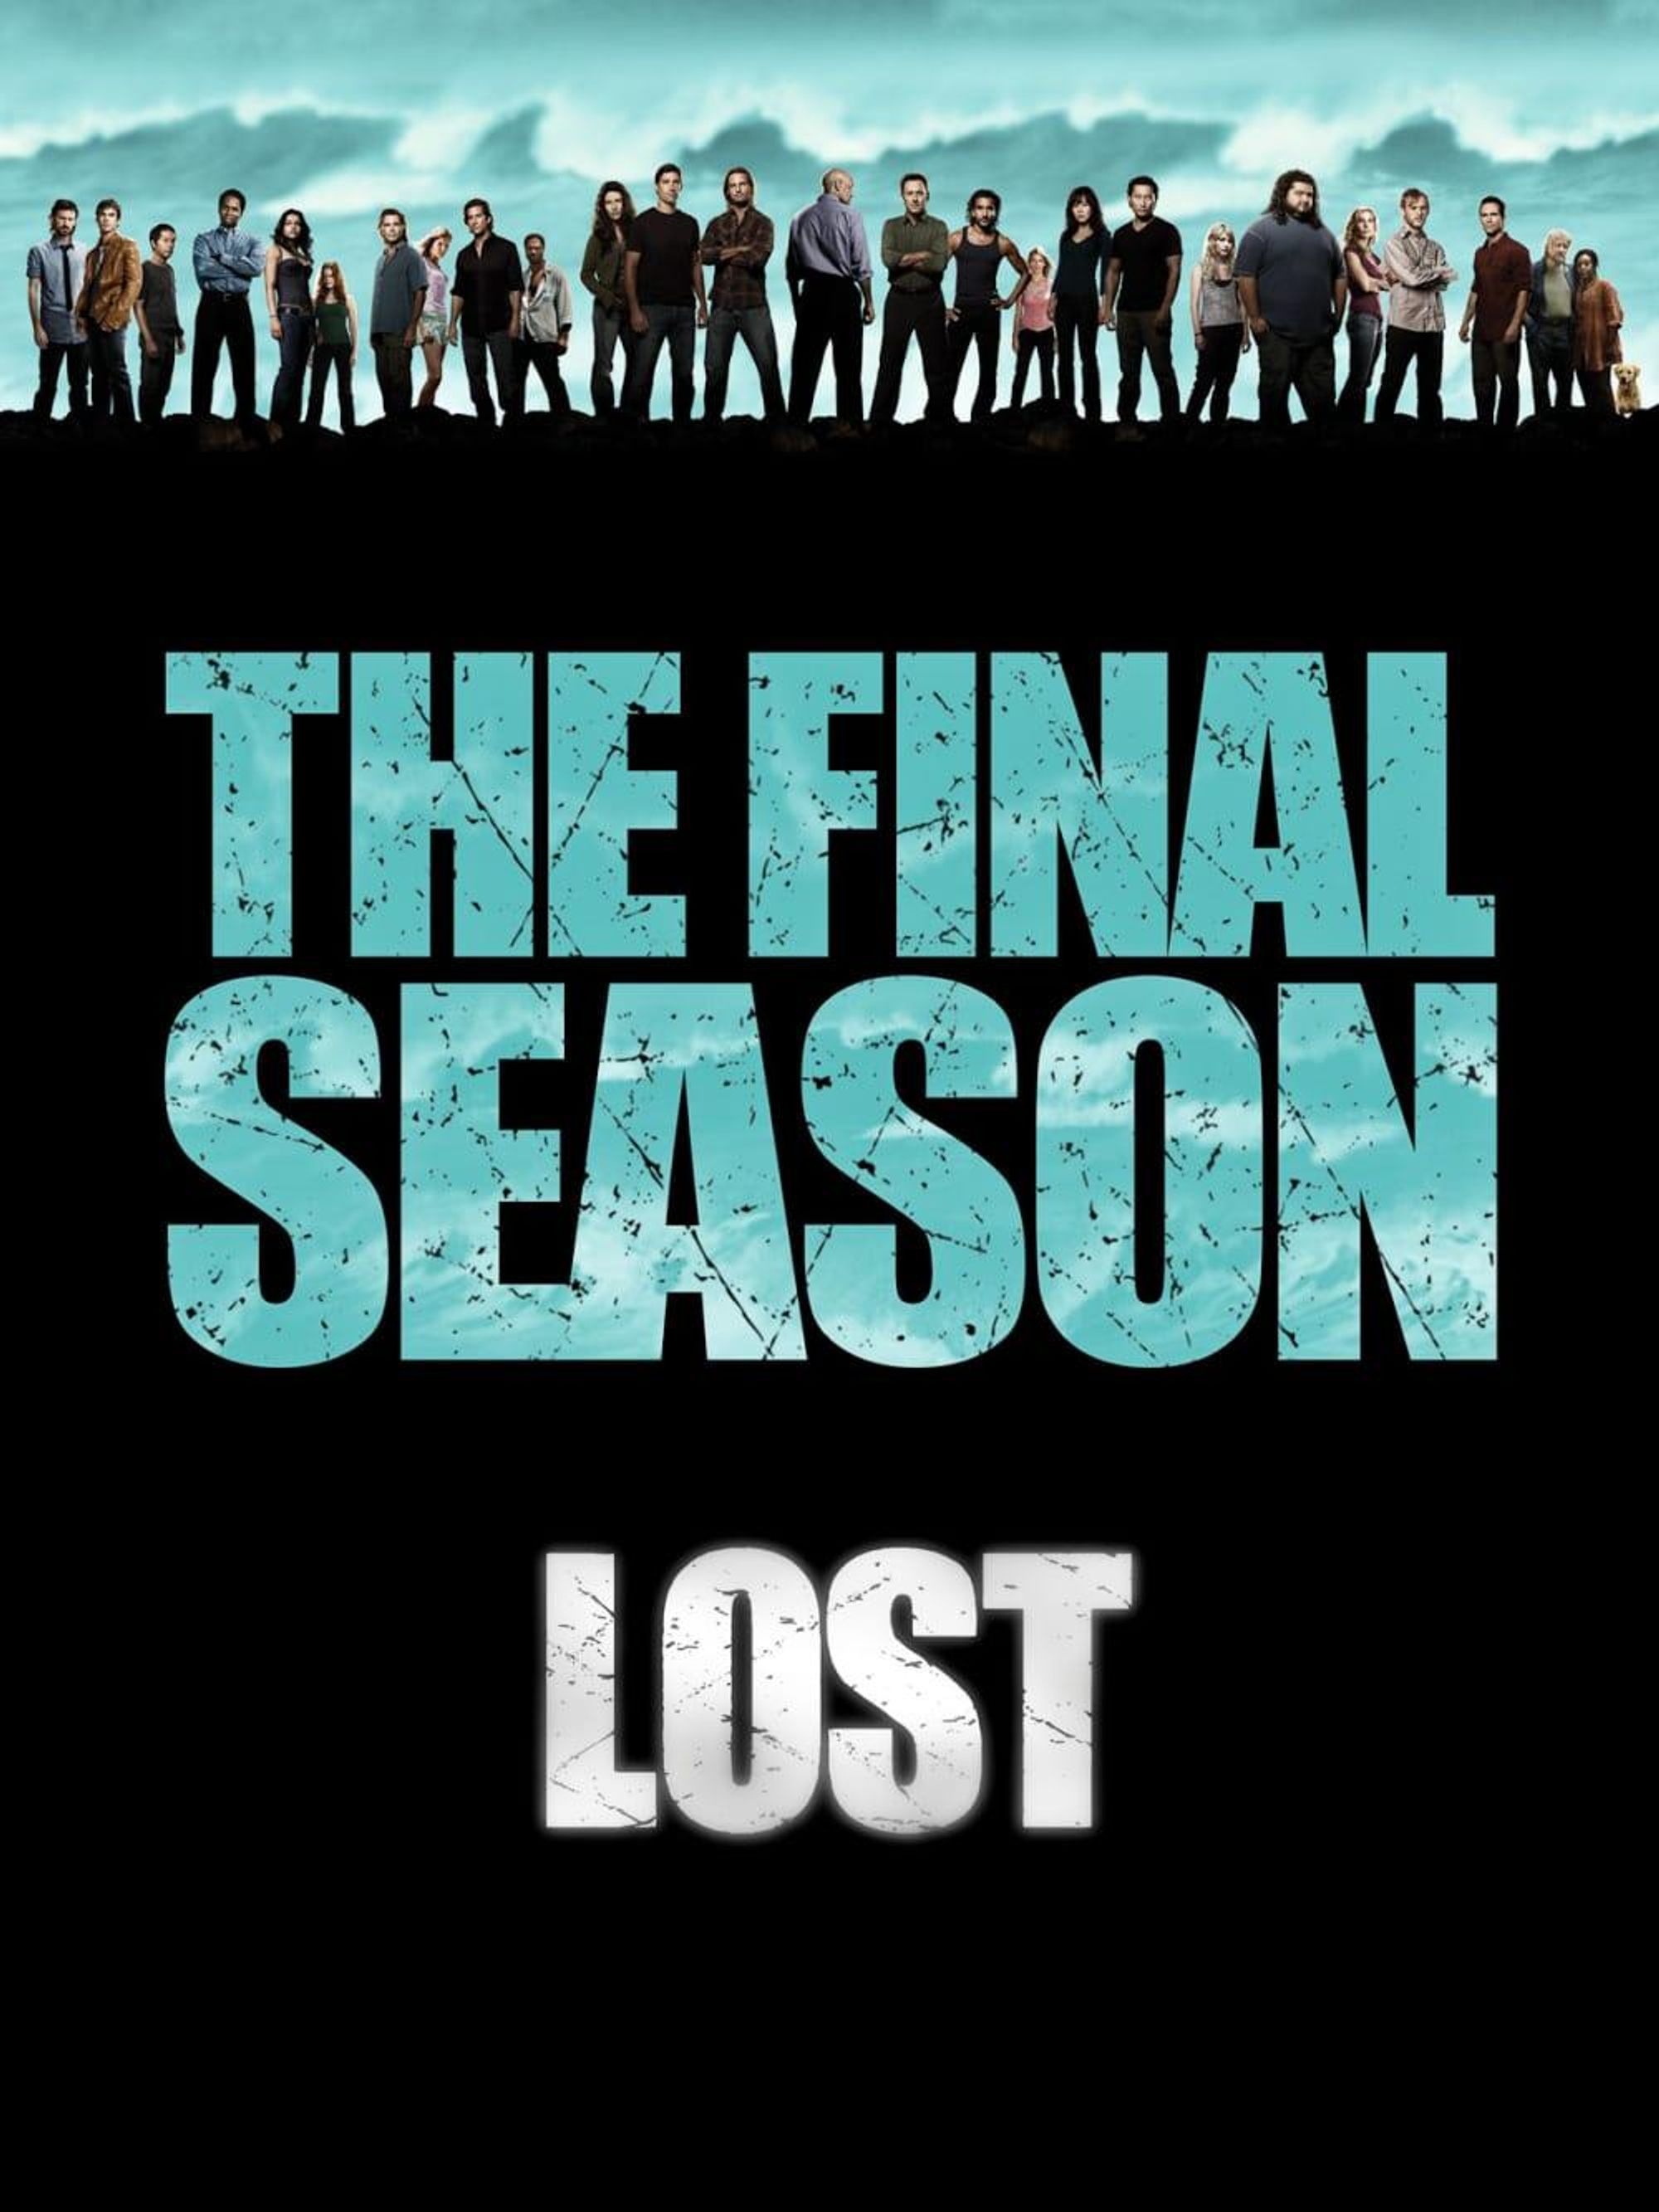 News_Lost season finale_Feb 10